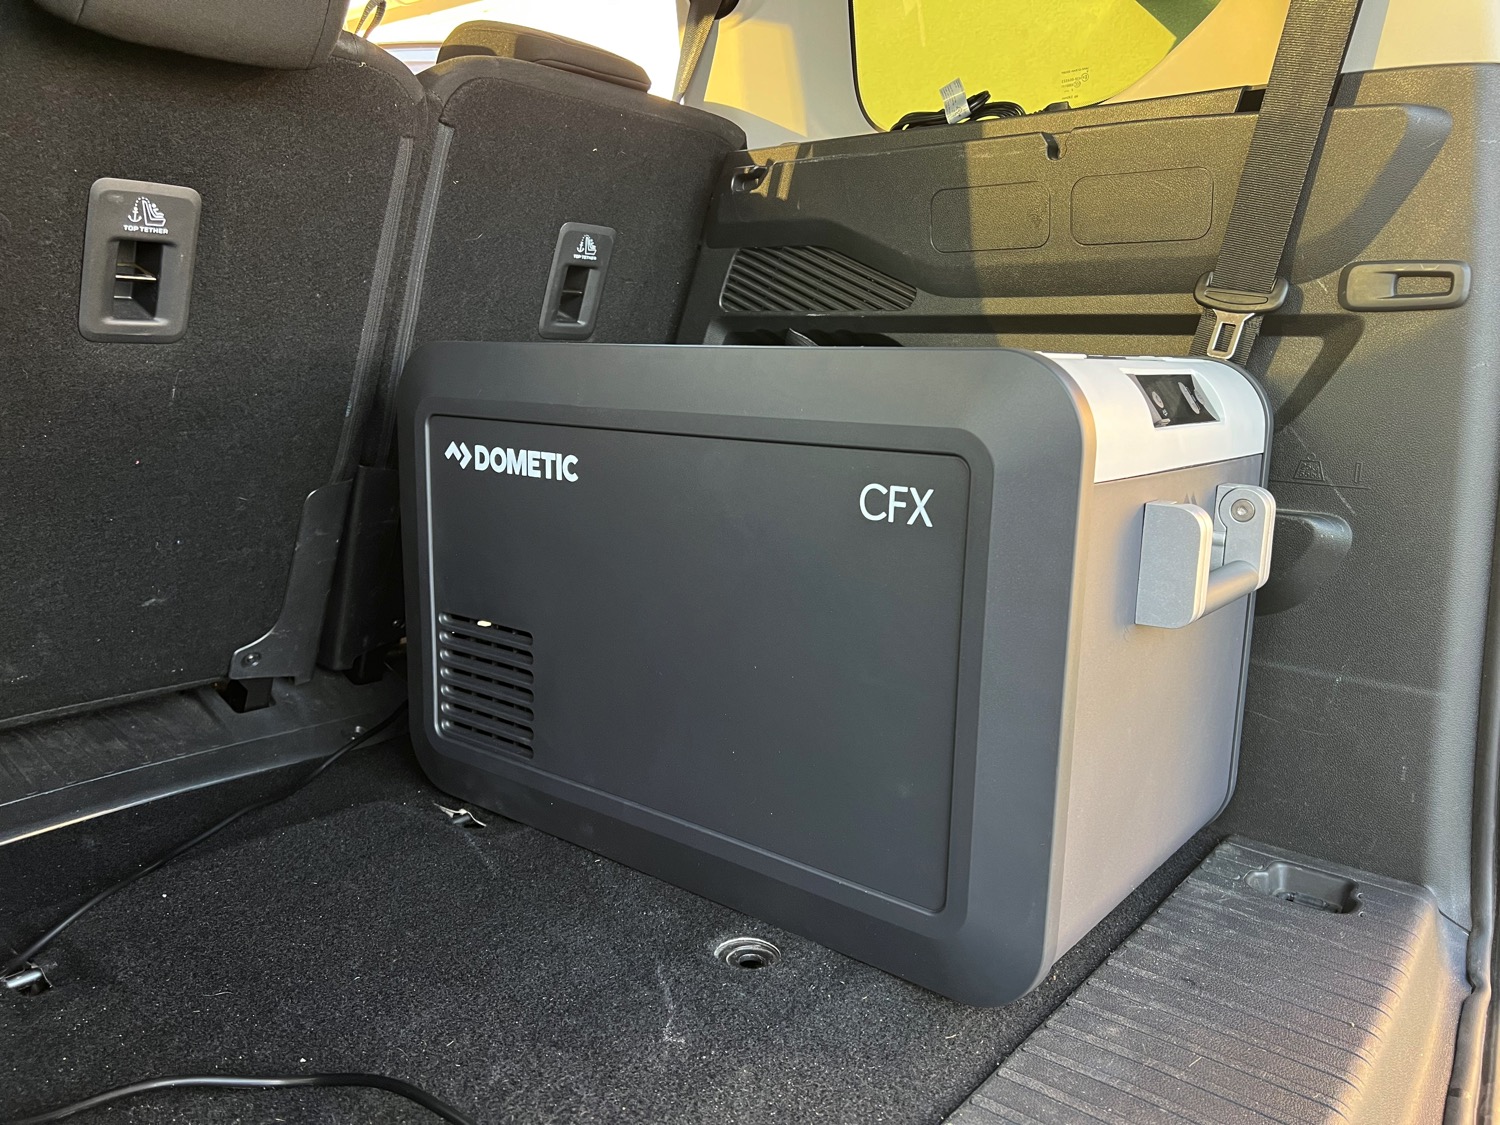 Dometic CFX3 35 ausprobiert: Mobile Kühlboxe mit App-Steuerung